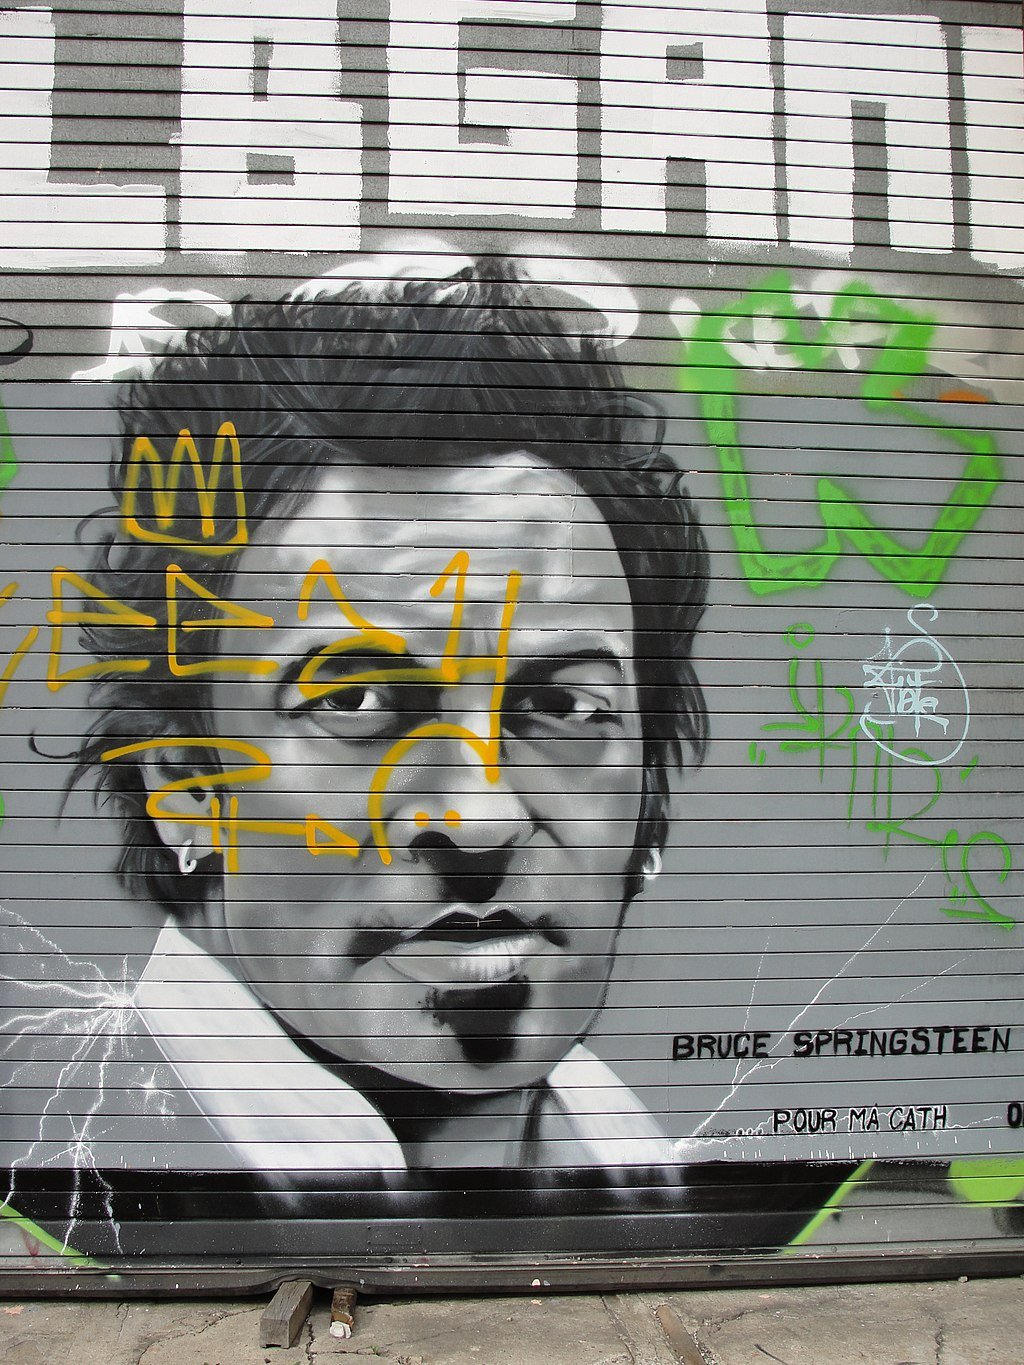 Bruce Springsteen graffiti